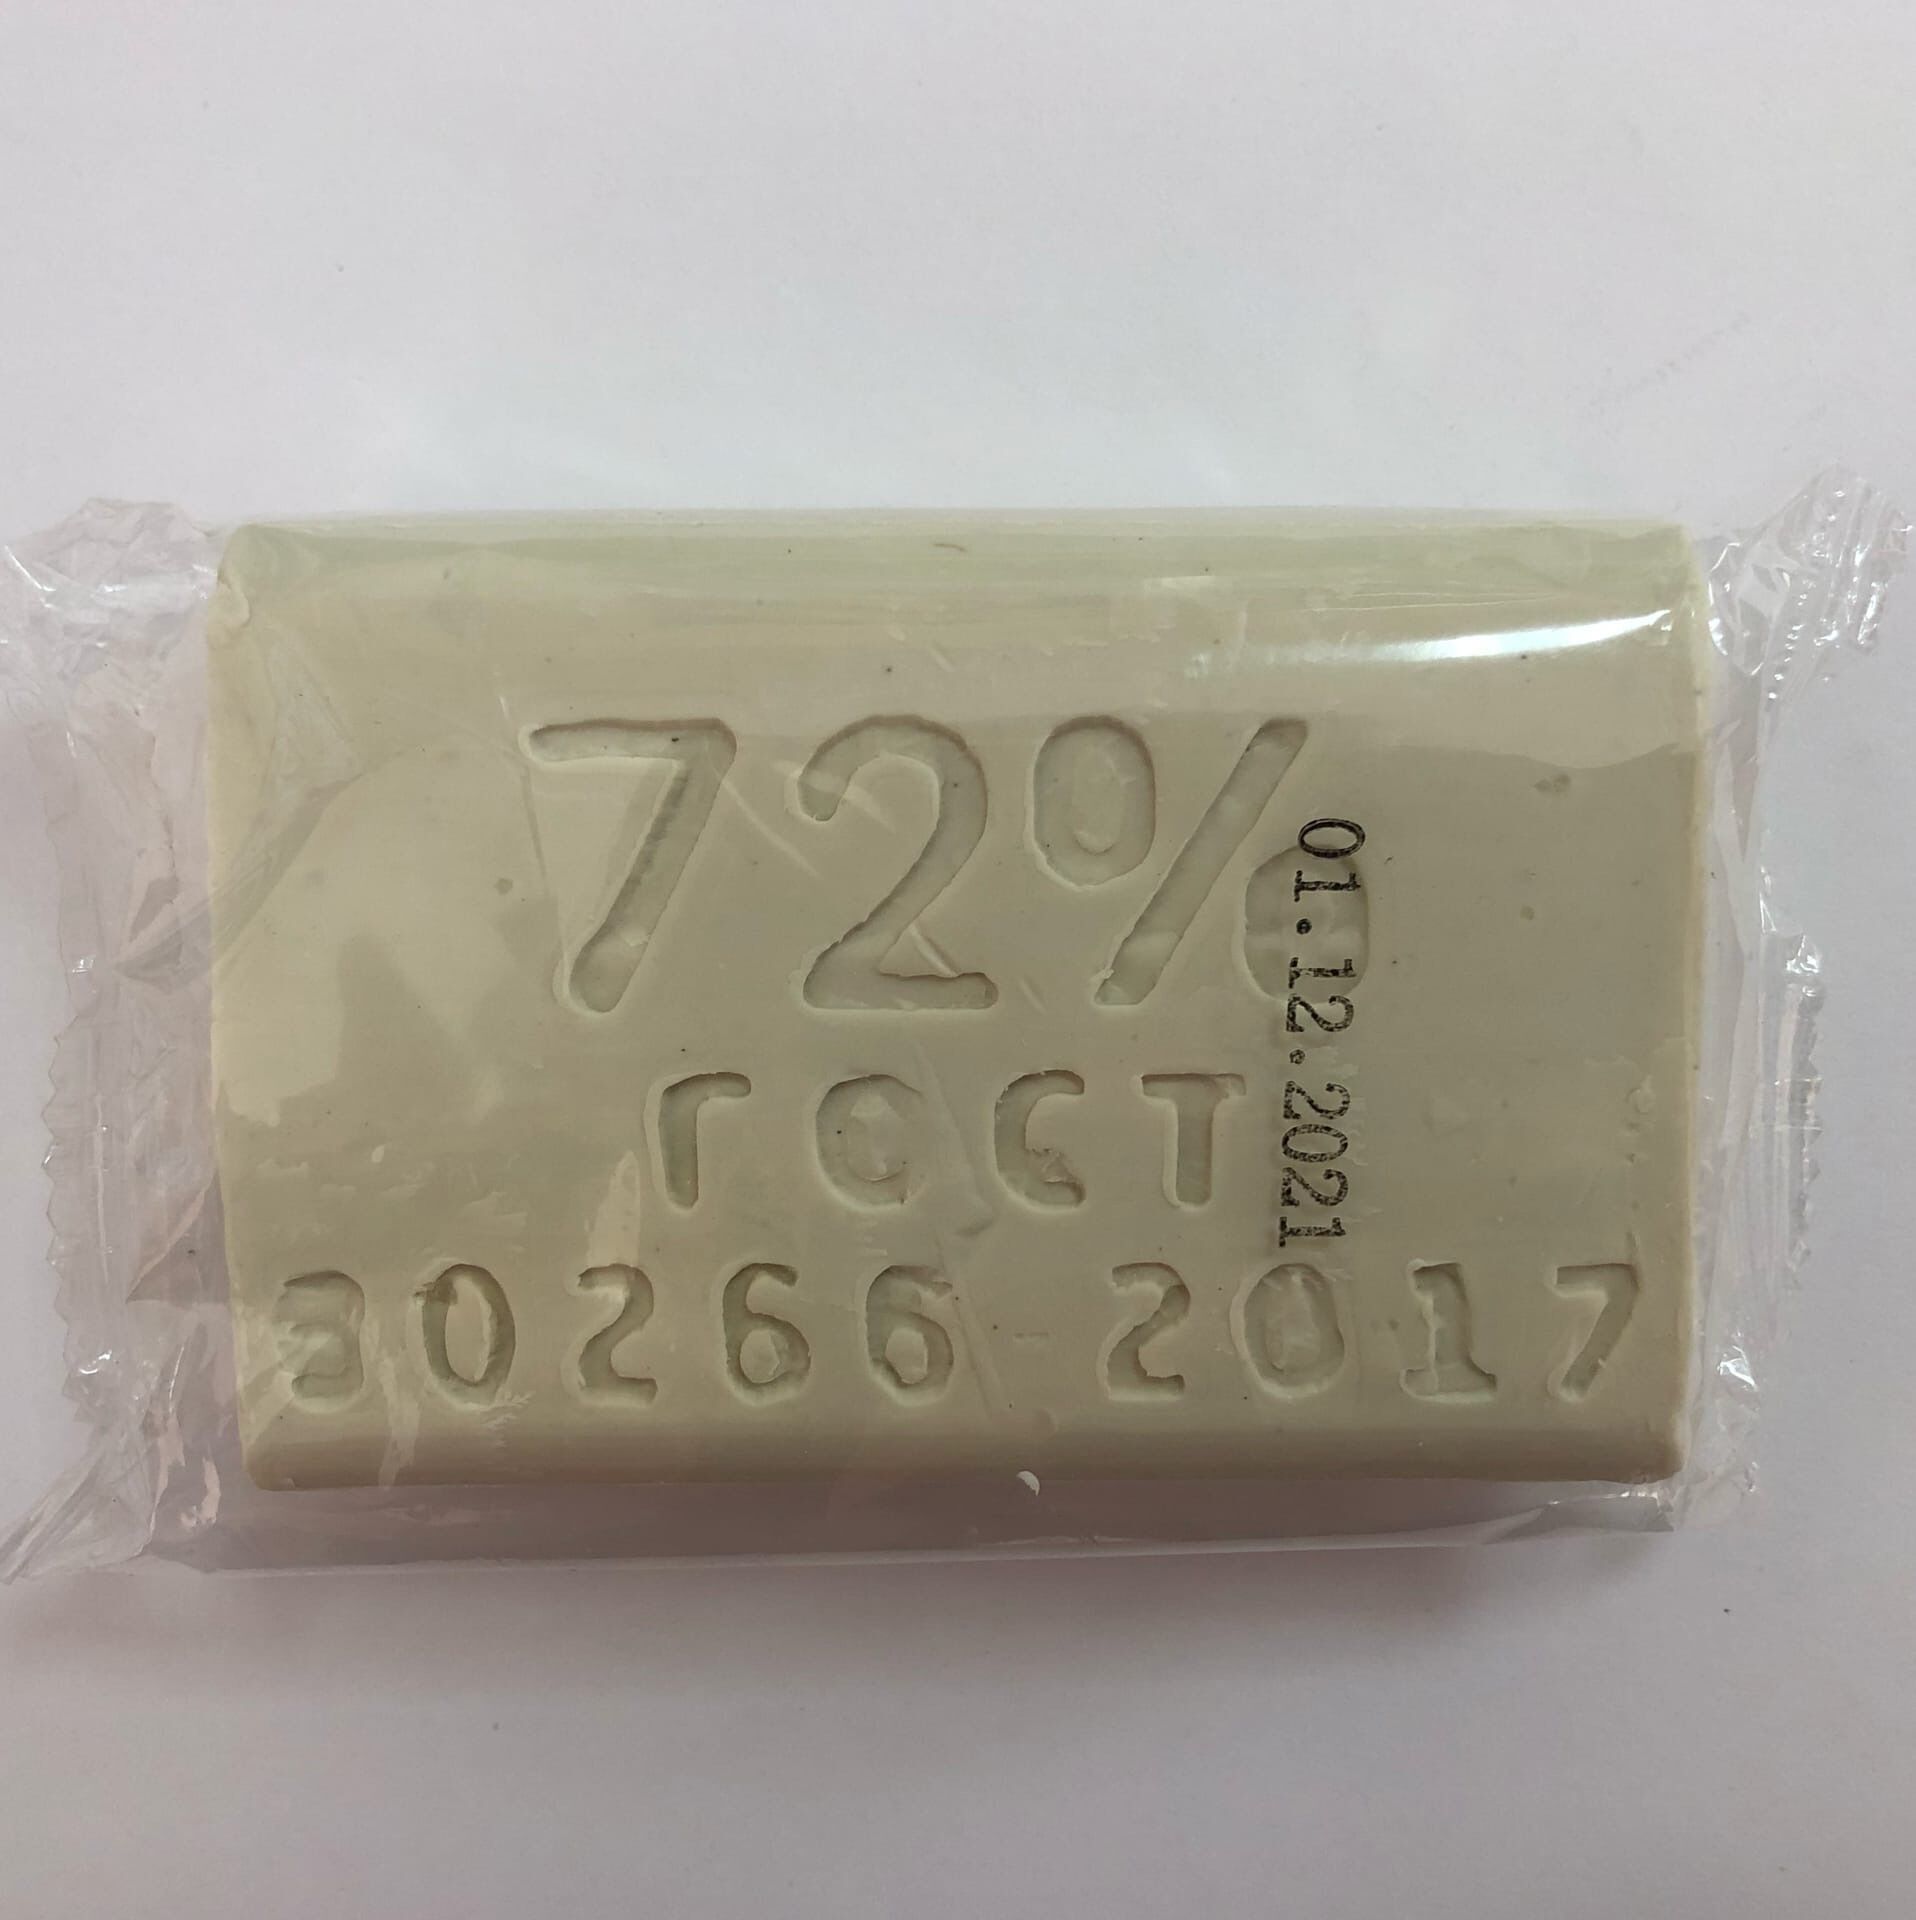 Хозяйственное мыло кусковое в индивидуальной упаковке72% / 200гр / Опт трейд